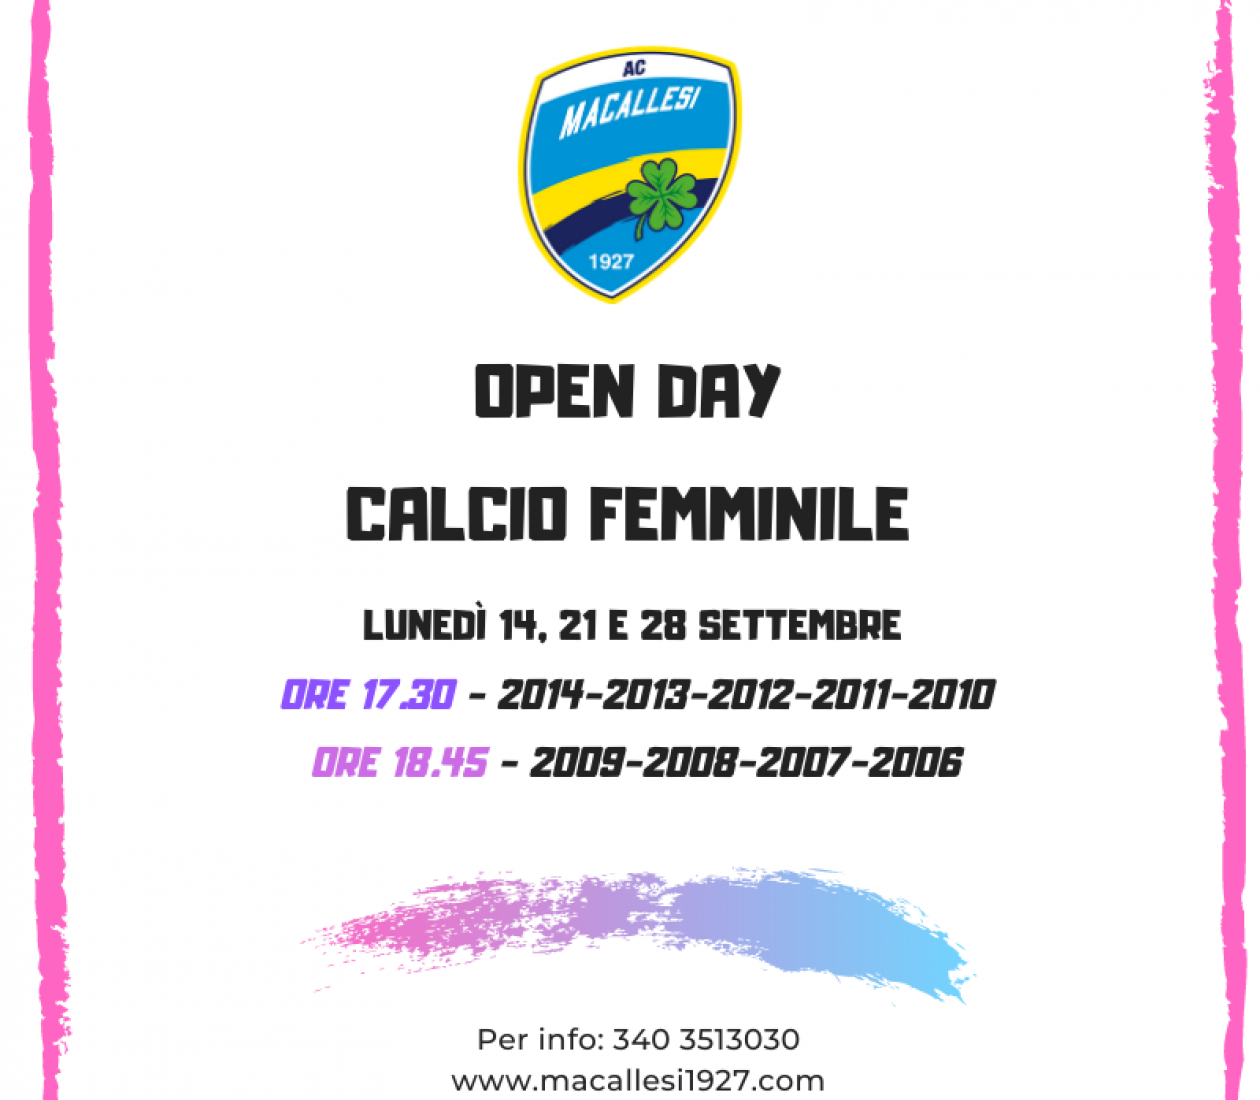 Nuove date Open day calcio femminile